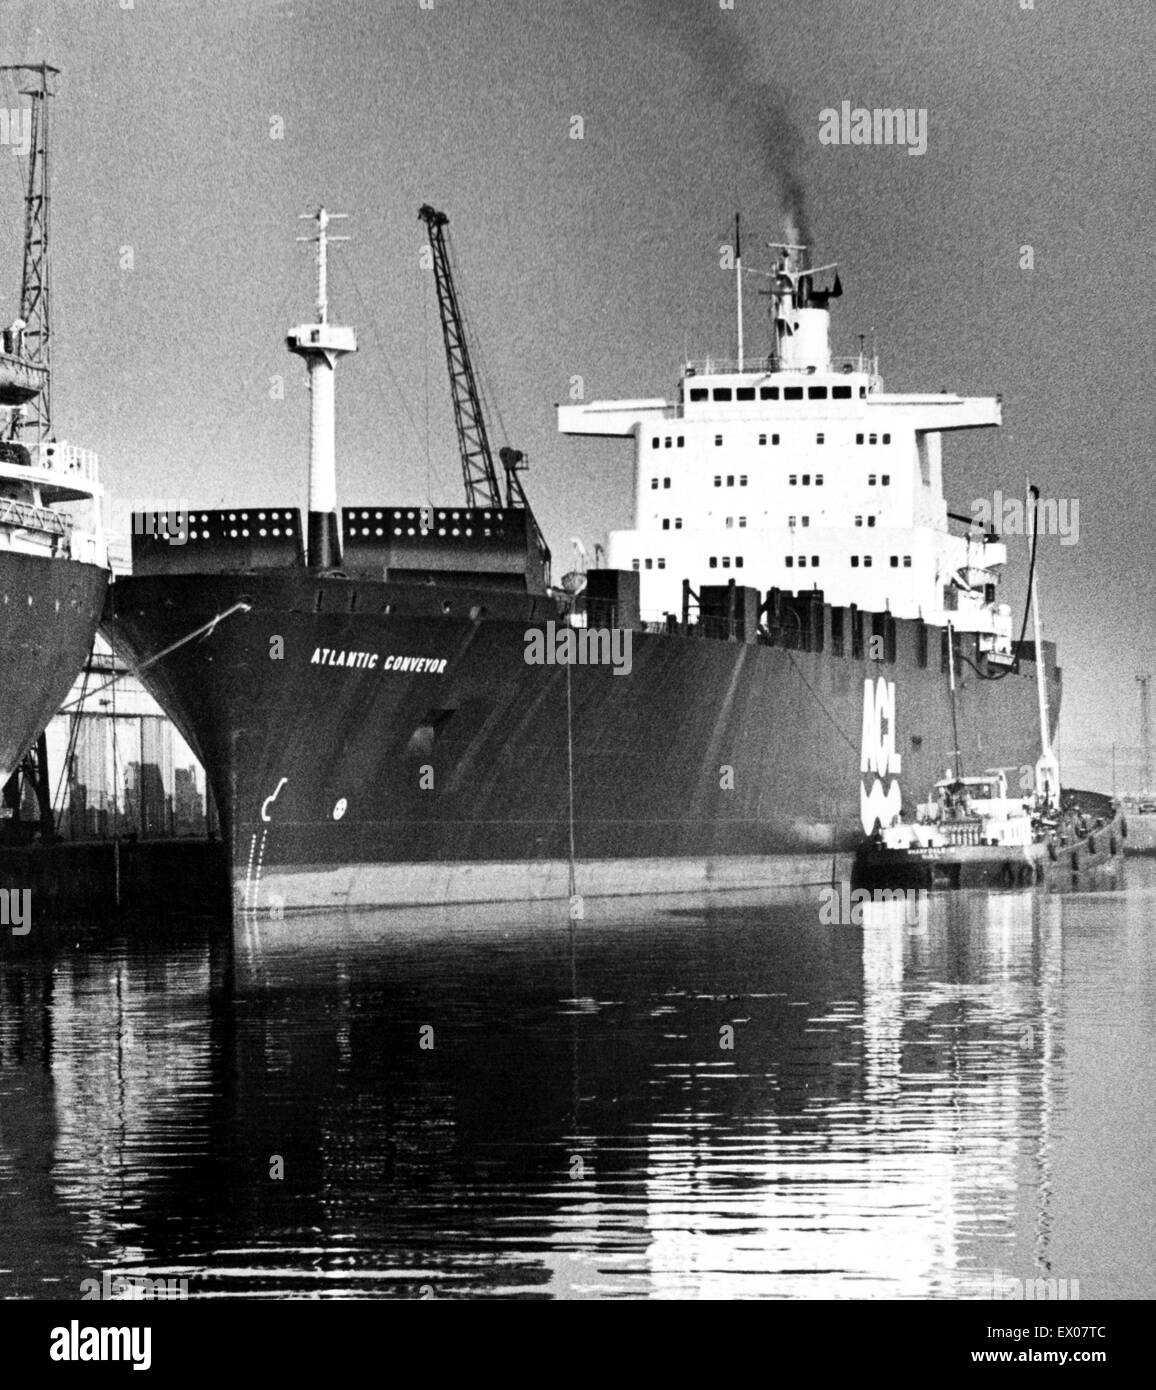 El Atlantic Conveyor, un buque de la marina mercante británica, que fue requisado durante la Guerra de las Malvinas. Ella fue golpeada el 25 de mayo de 1982 por dos argentinos aire lanzó misiles Exocet AM39, matando a 12 marineros. Circa 1980. Foto de stock